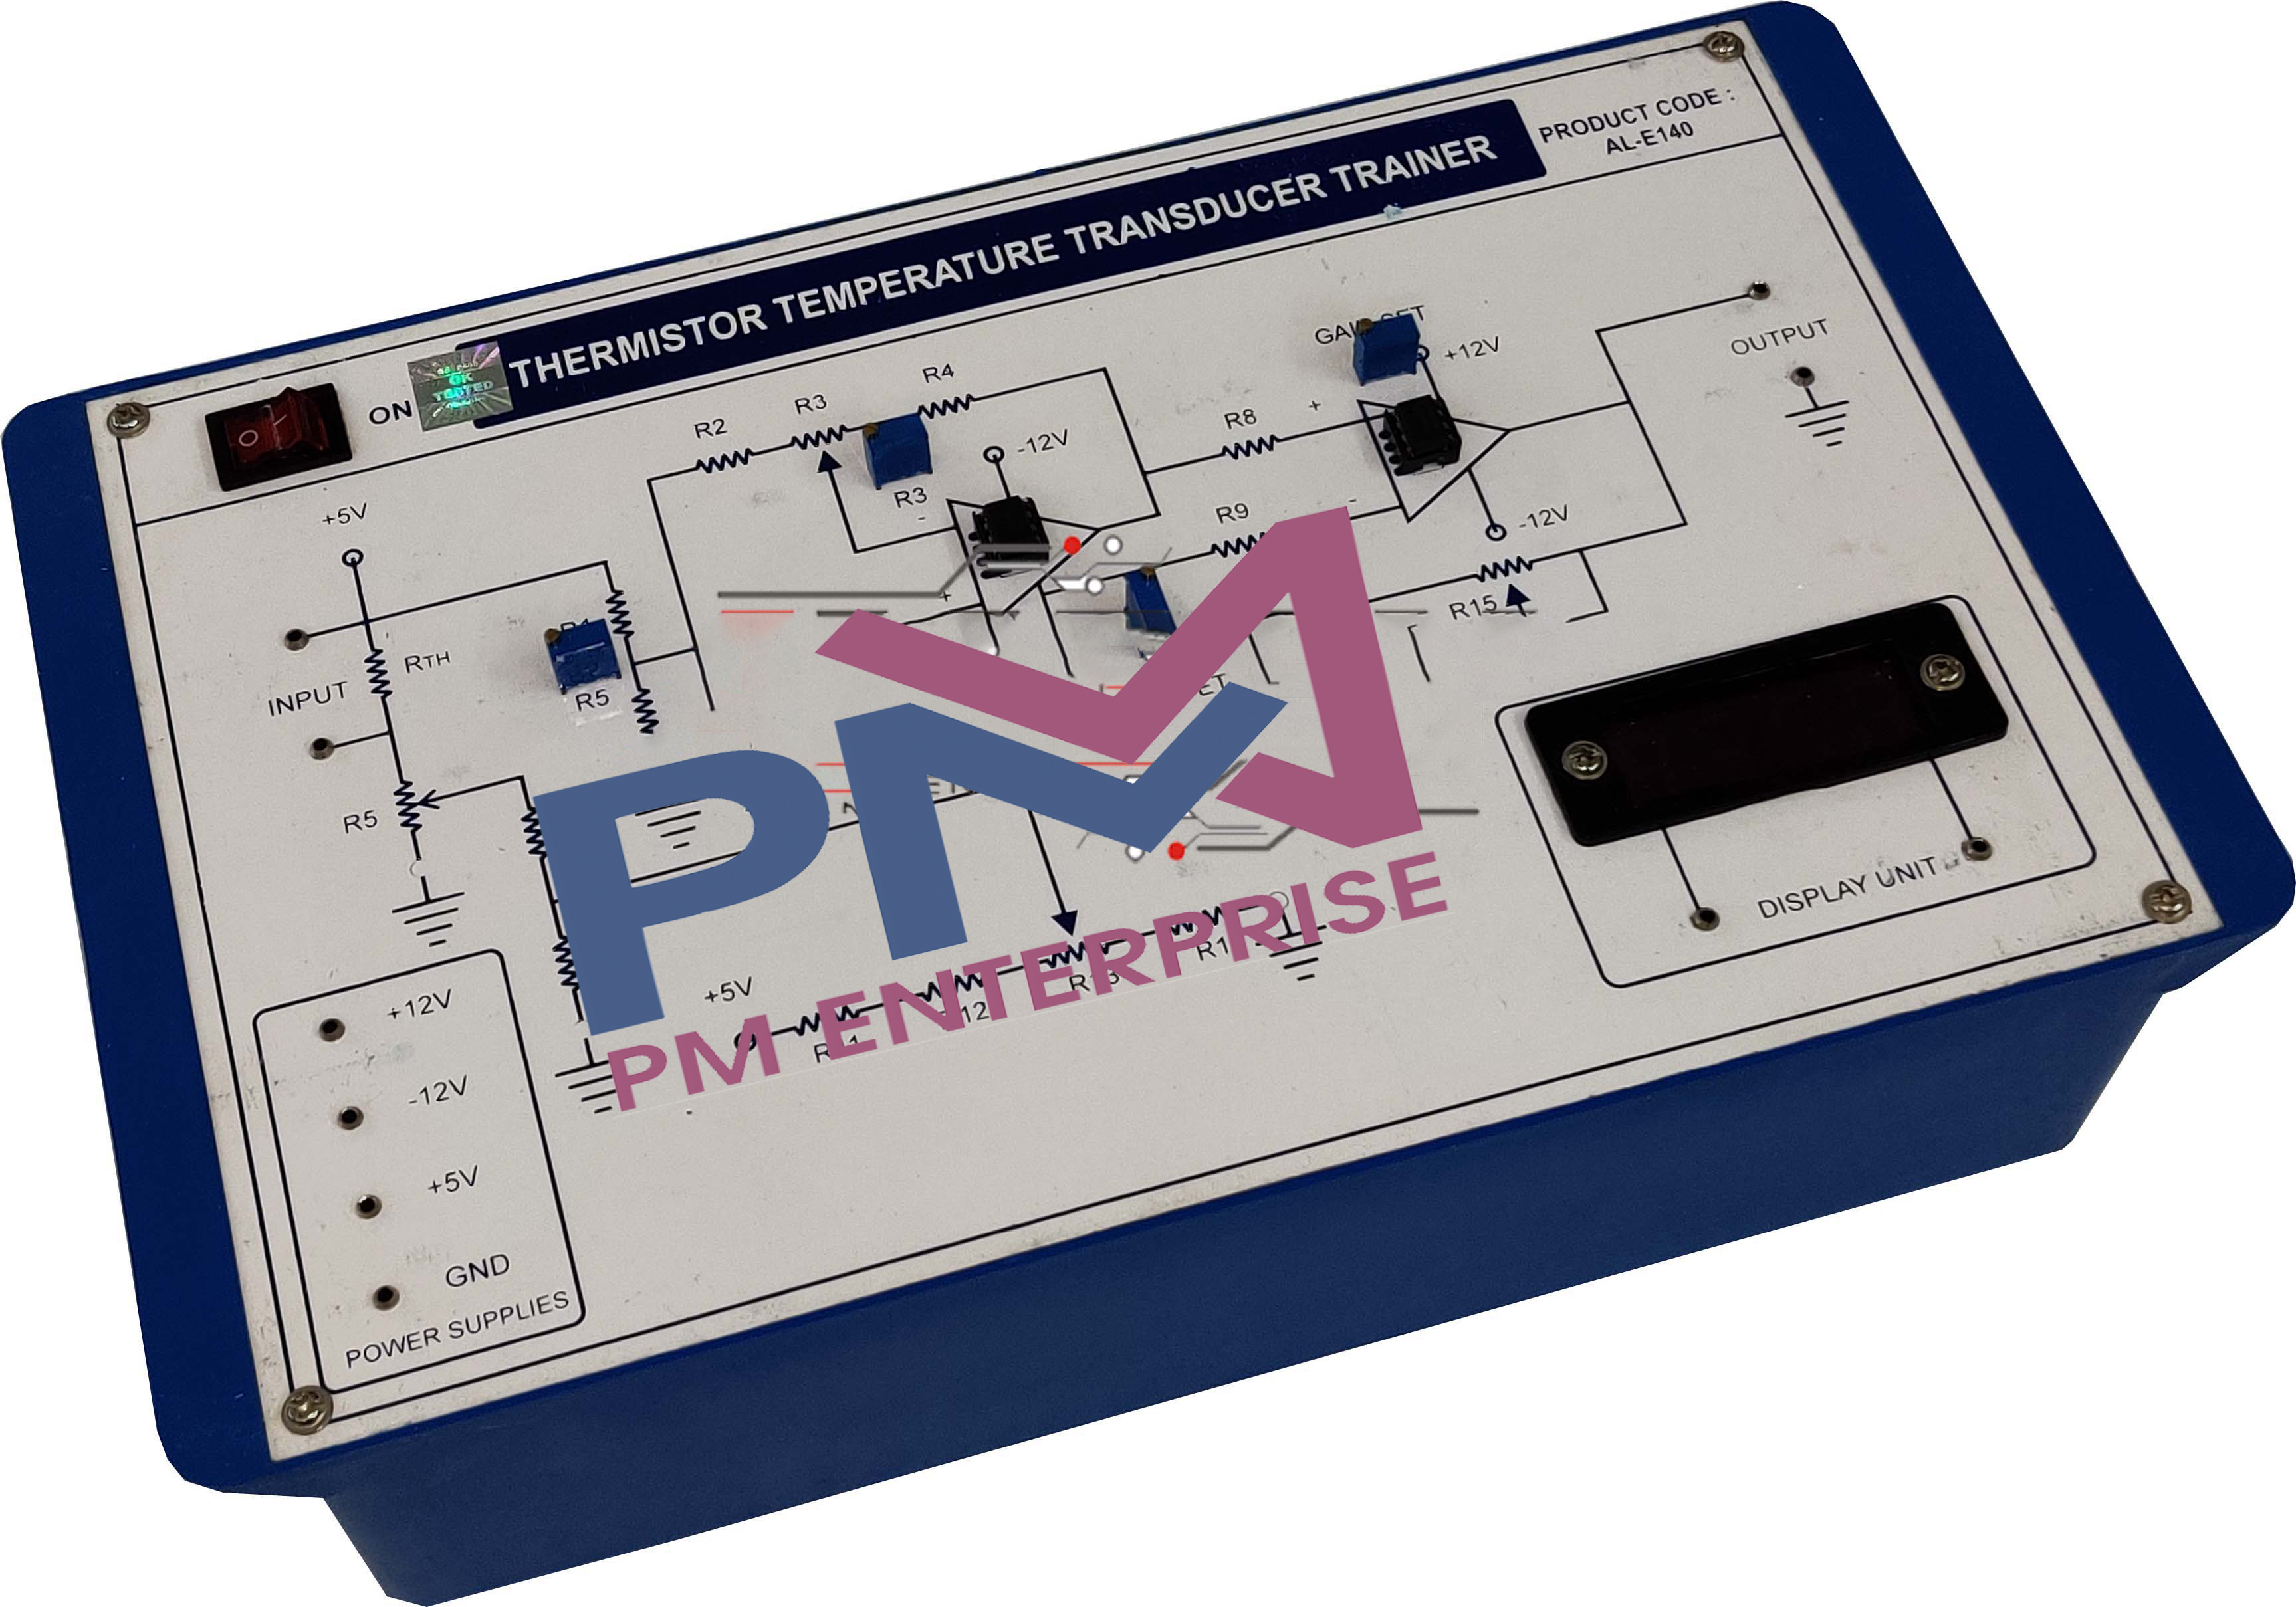 PM-P140 THERMISTOR TEMPERATURE TRANSDUCER TRAINER